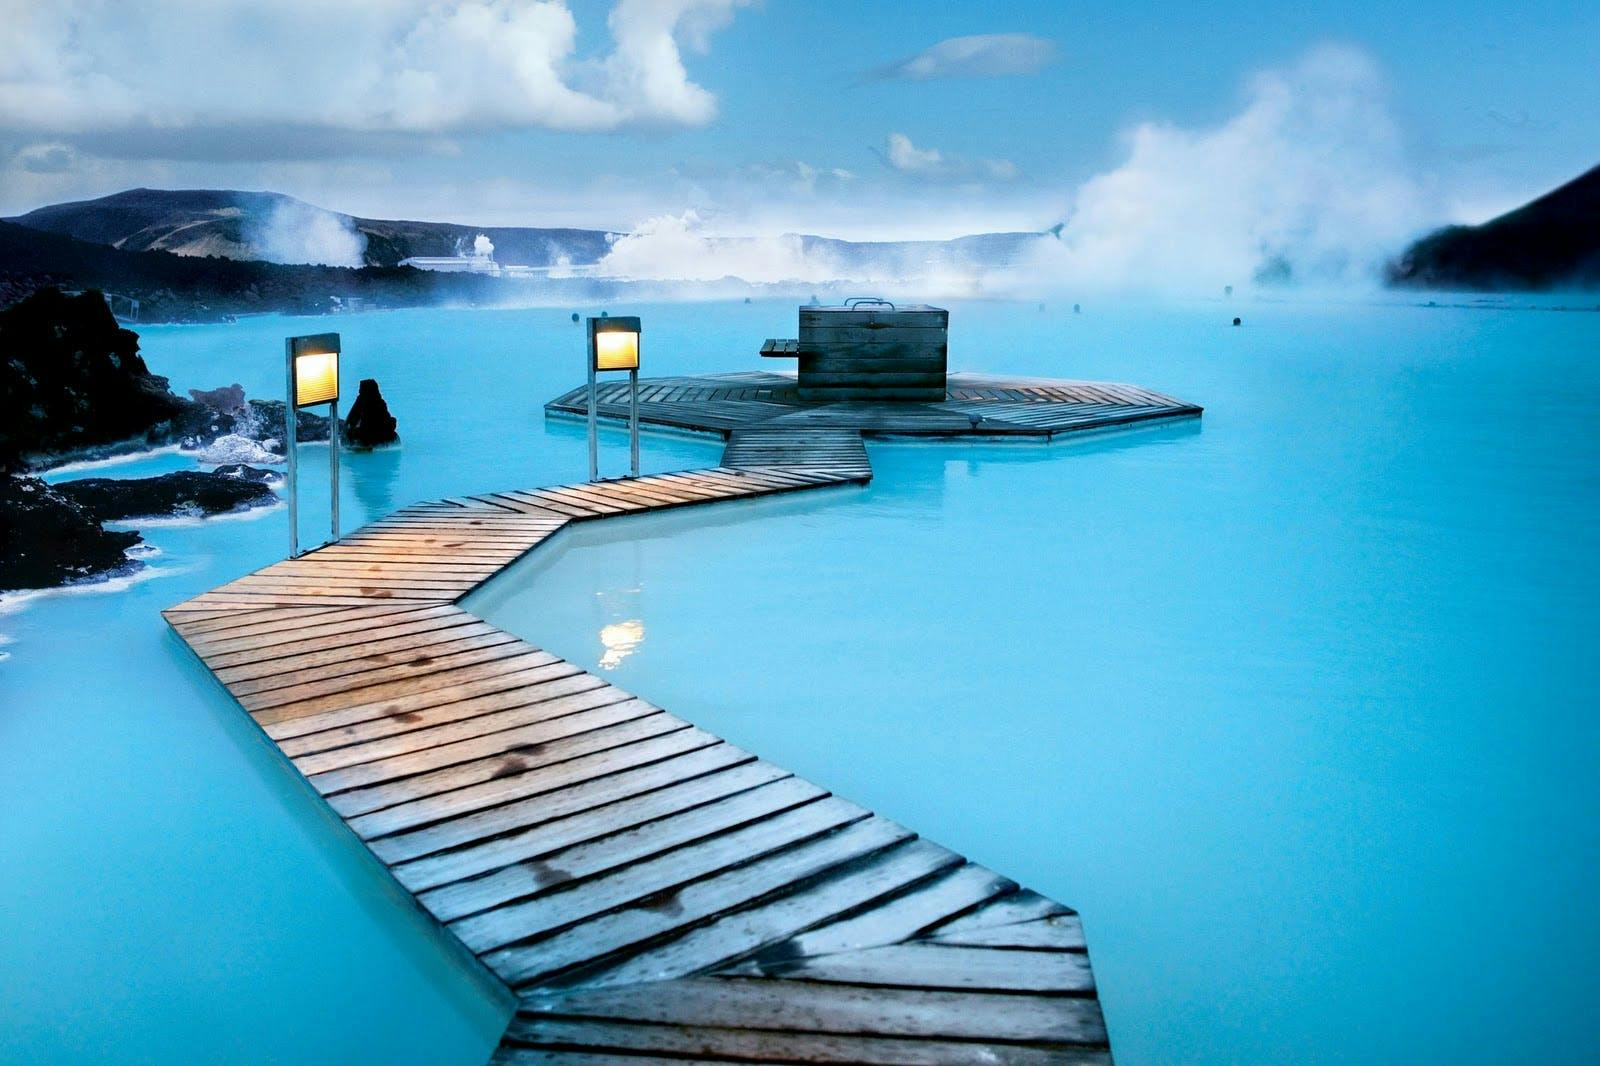 Starte dein Islandabenteuer mit einem erholsamen Bad im Geothermal-Spa Blaue Lagune.